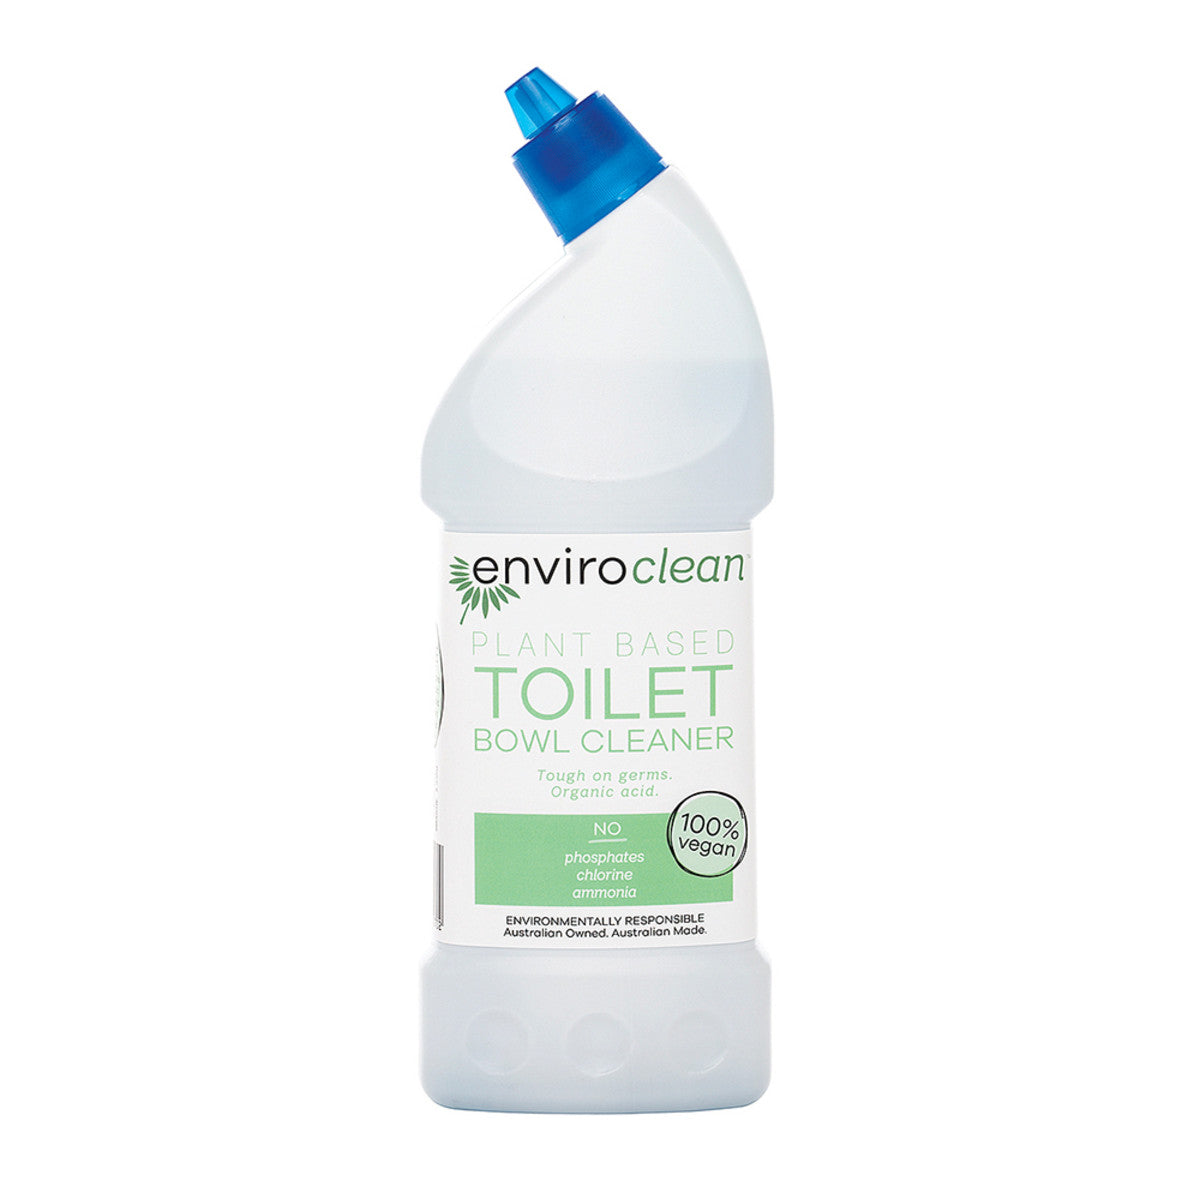 EnviroClean - Toilet Bowl Cleaner 500ml